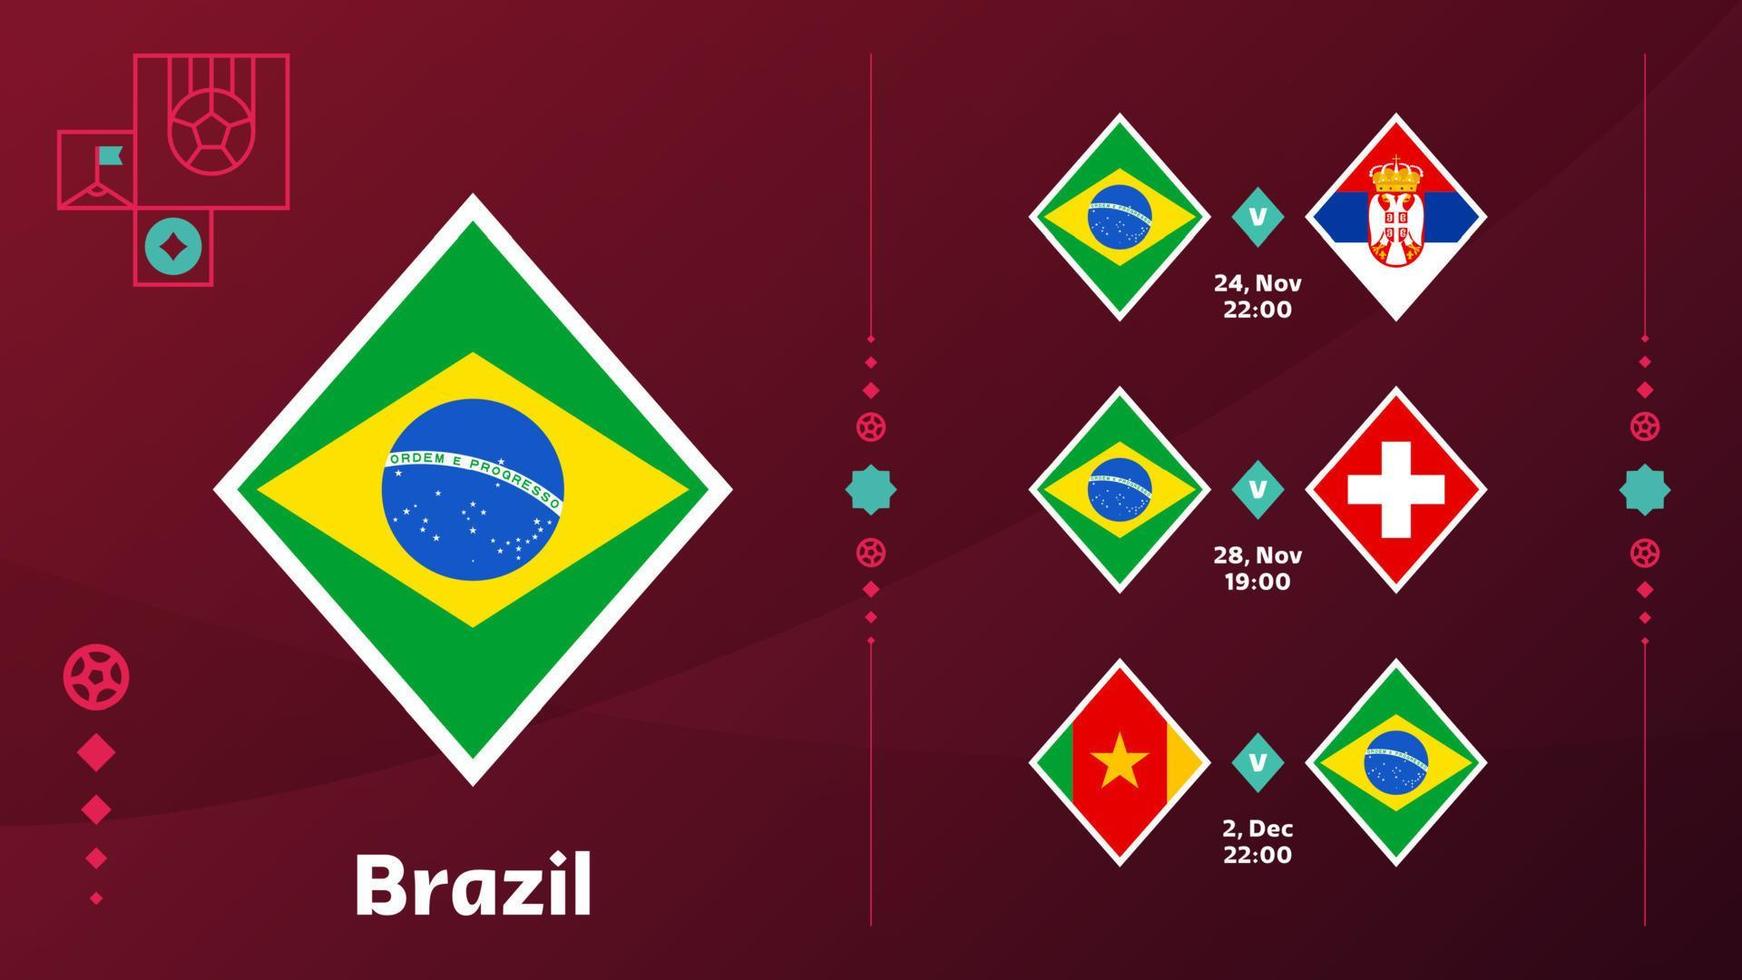 Die brasilianische Nationalmannschaft plant Spiele in der Endphase der Fußball-Weltmeisterschaft 2022. vektorillustration der weltfußballspiele 2022. vektor